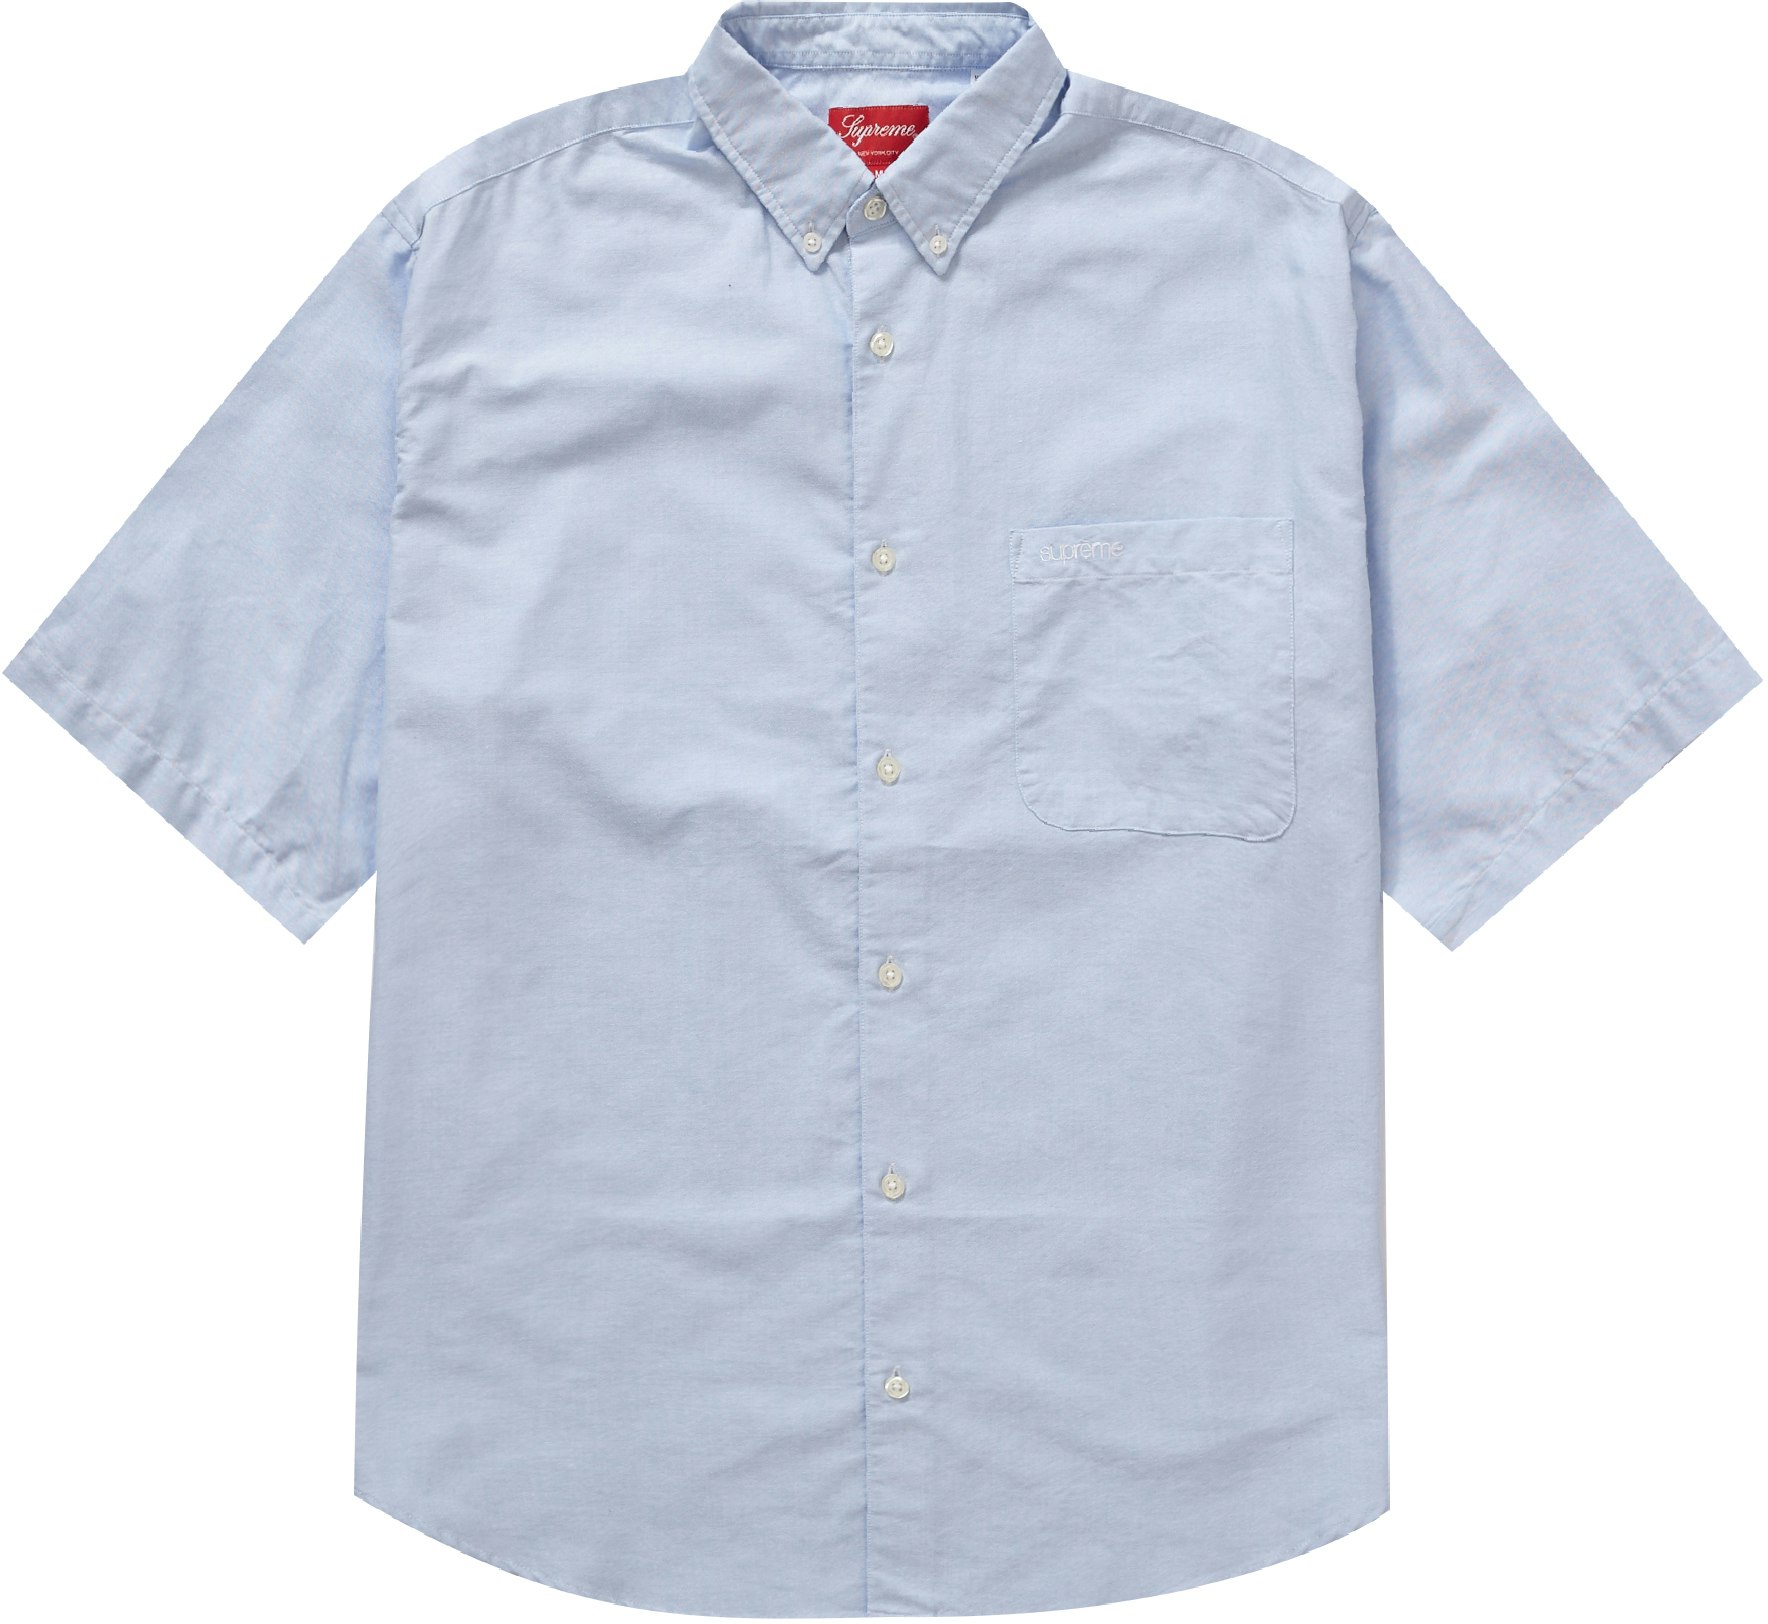 Supreme Loose Fit S/S Oxford Shirt Light Blue - Novelship